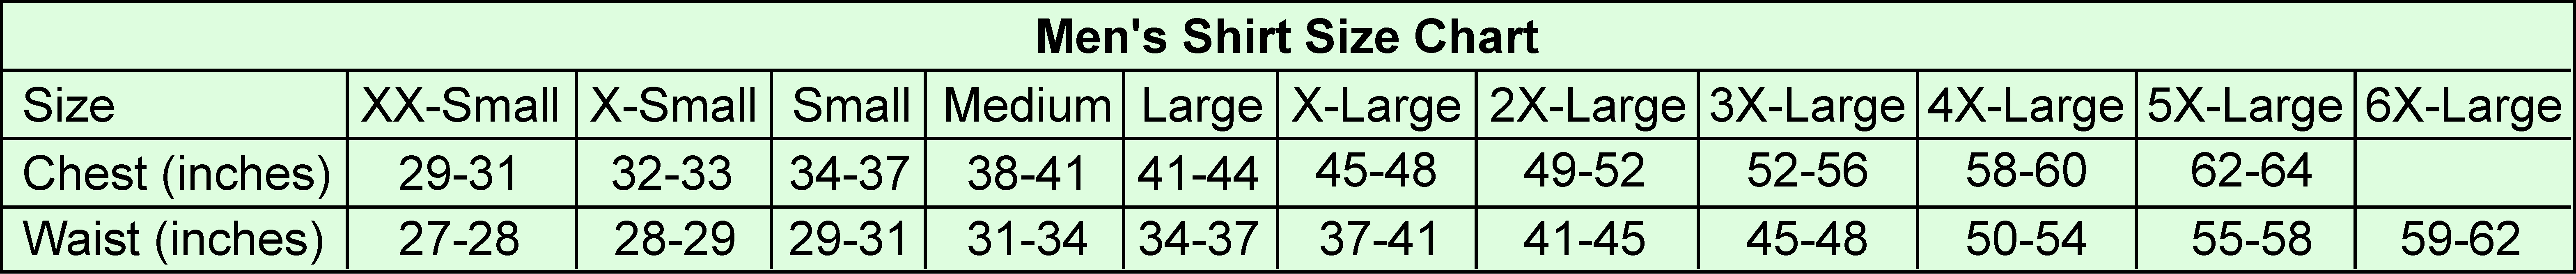 Men's shirt size chart